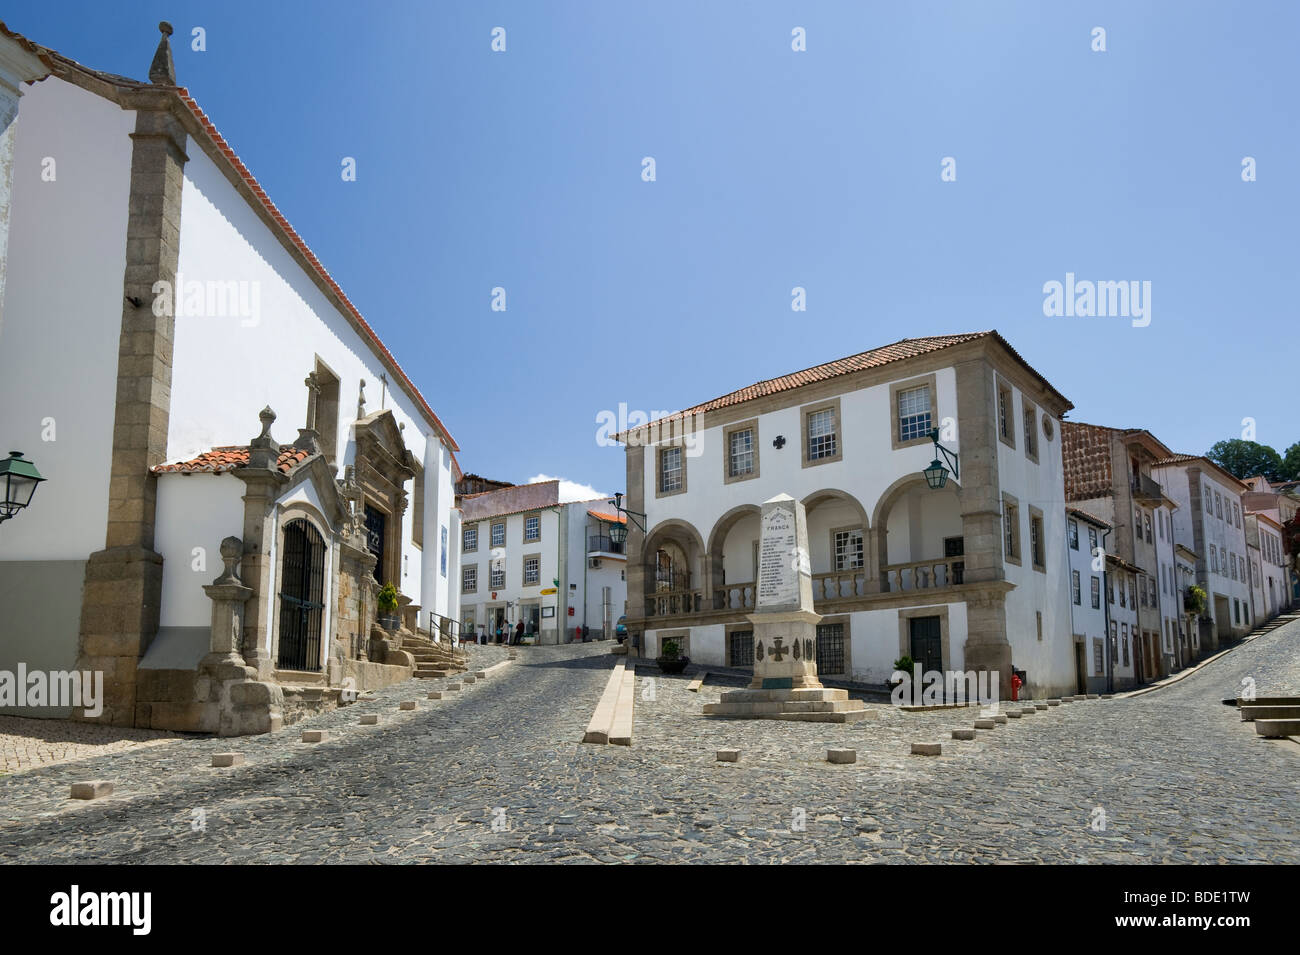 Portugal, Tras os Montes, Braganca, street scene Stock Photo